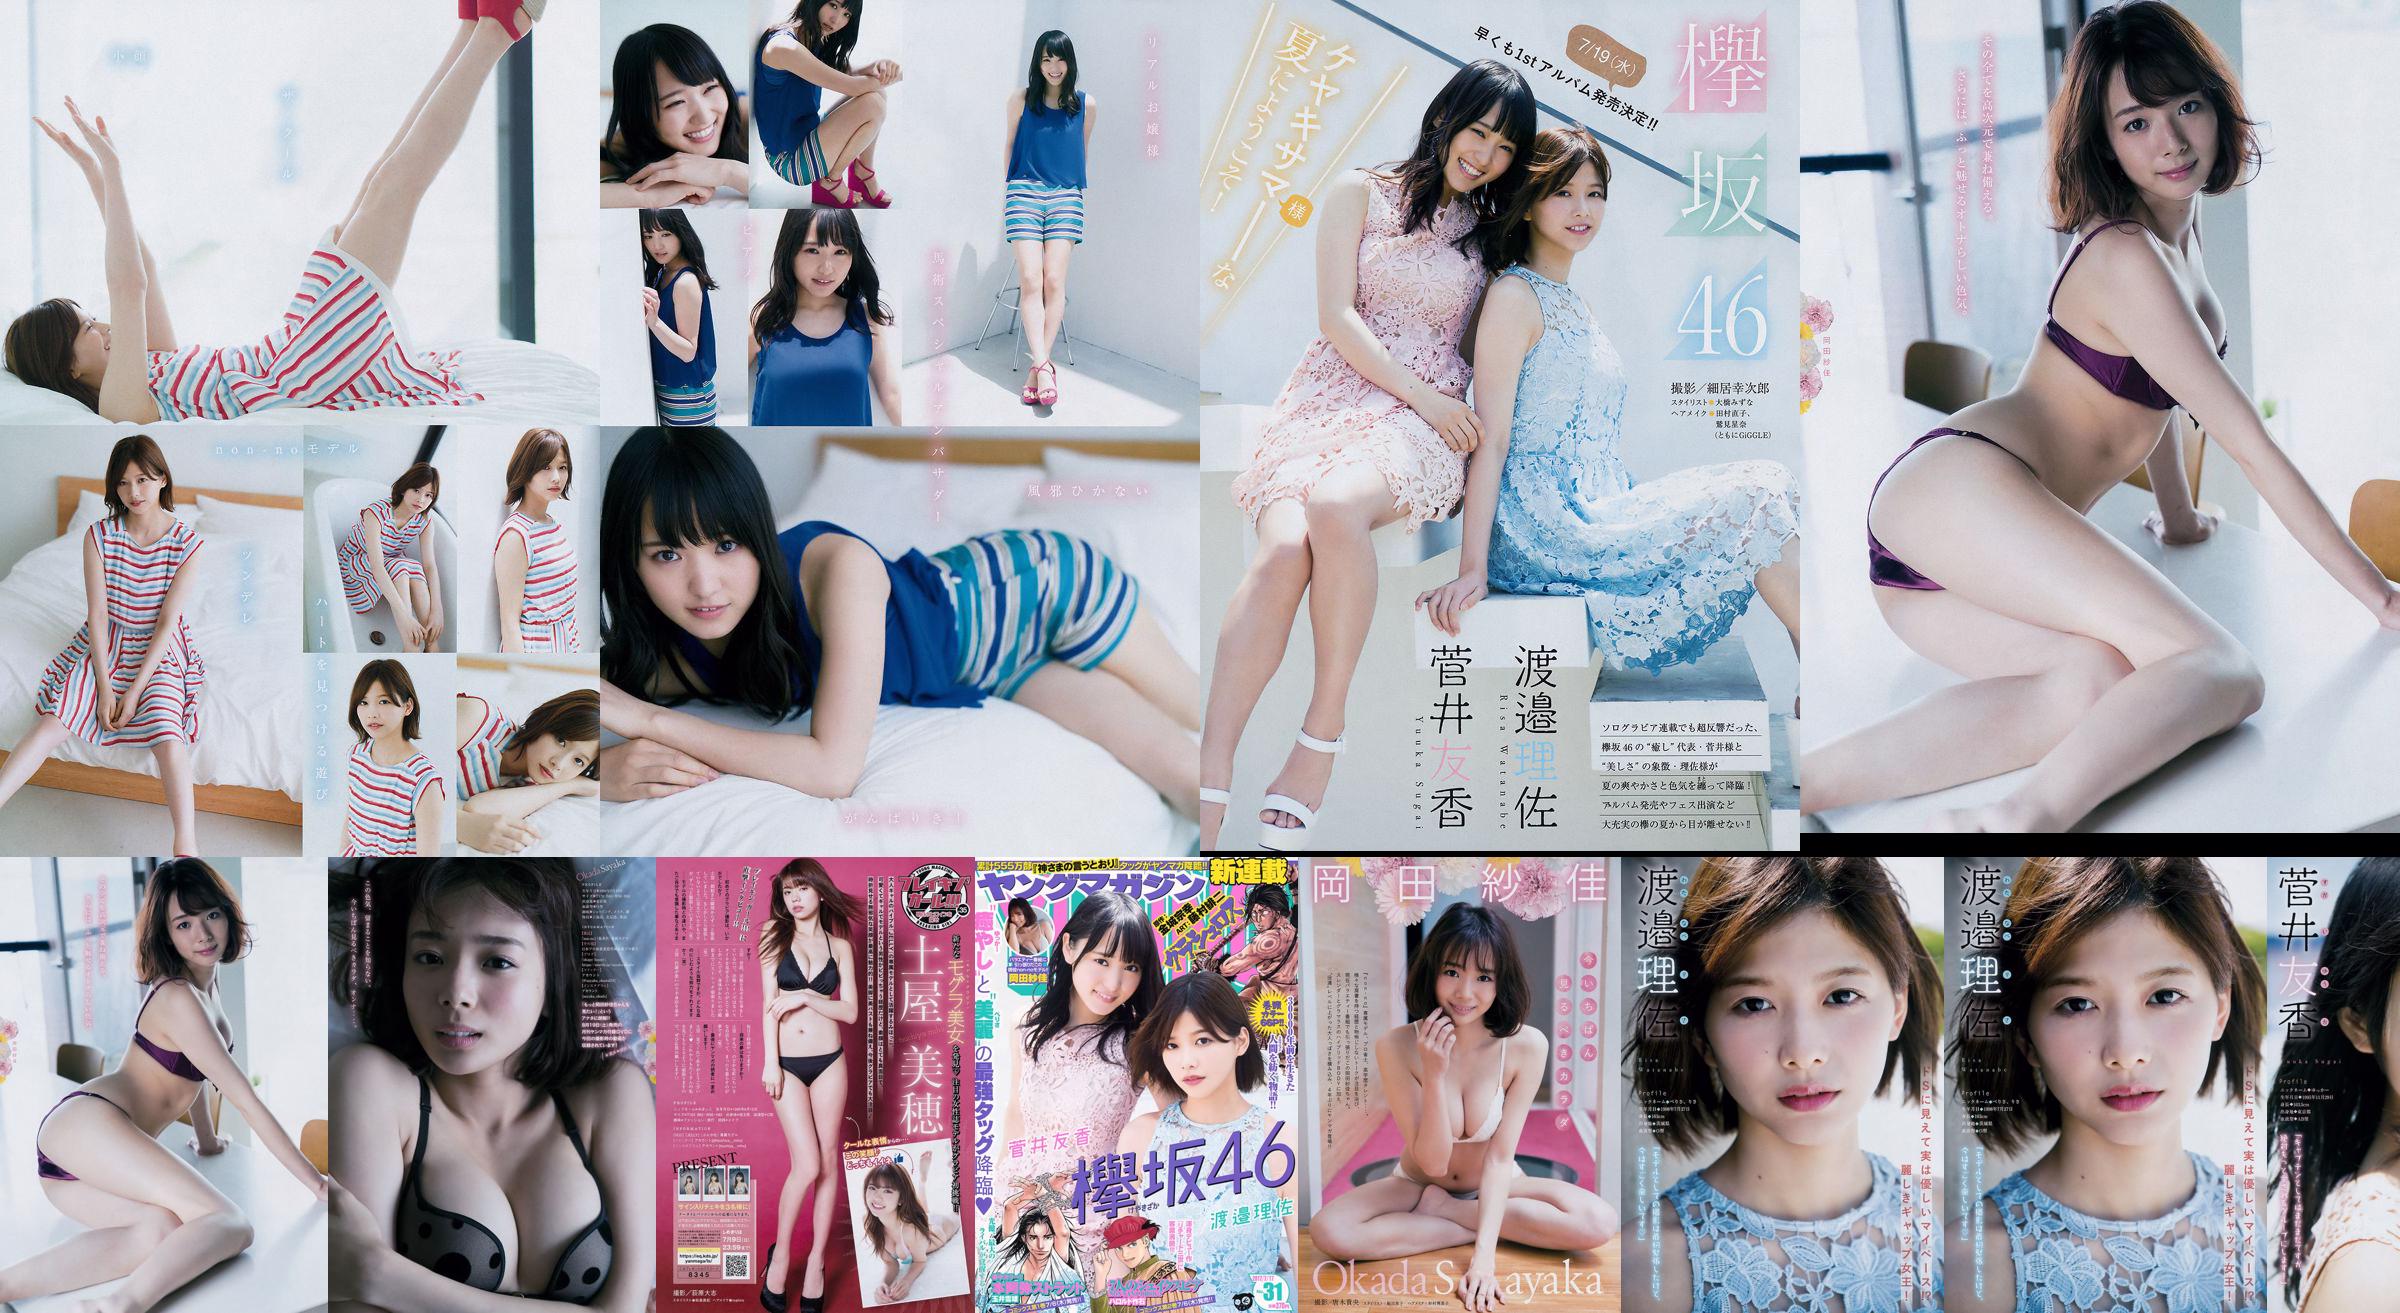 [Young Magazine] Watanabe Risa, Sugai Yuka, Okada Saika 2017 No.31 Photo Magazine No.486ada Pagina 1